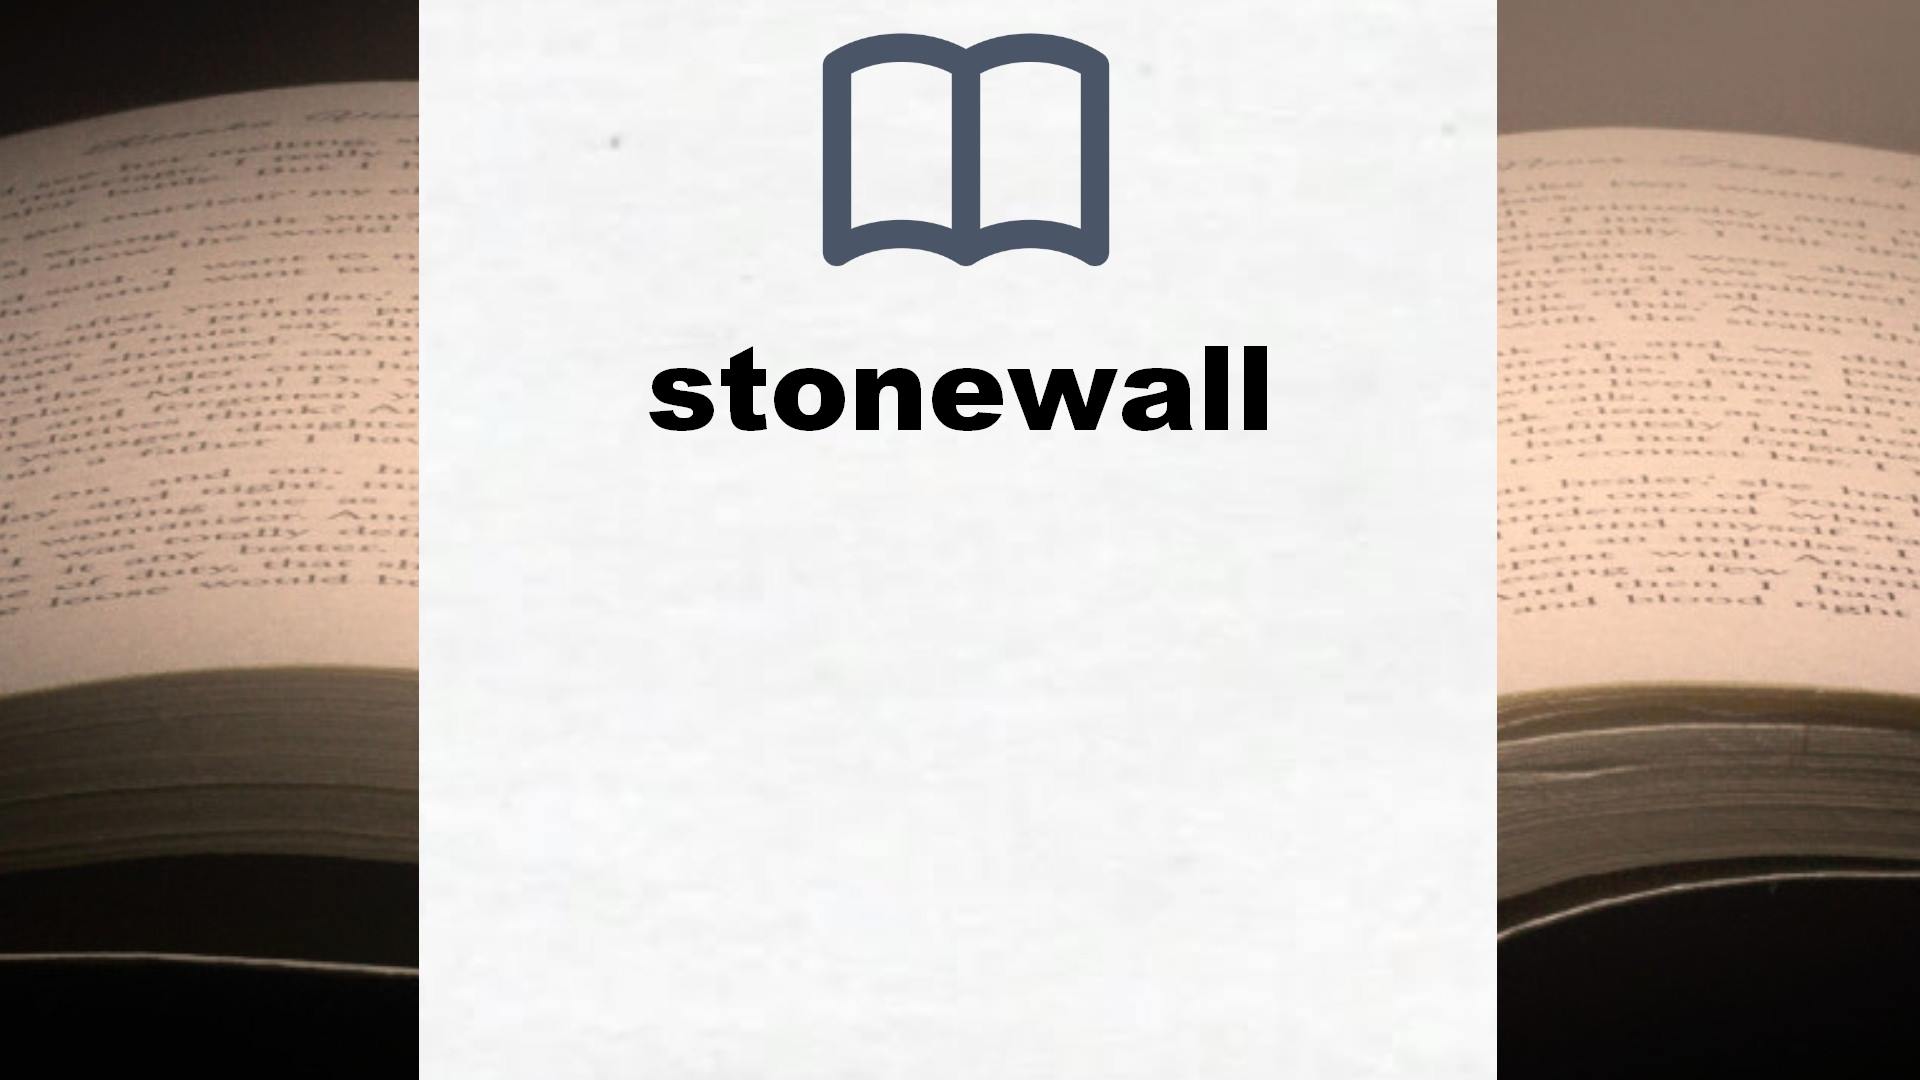 Libros sobre stonewall